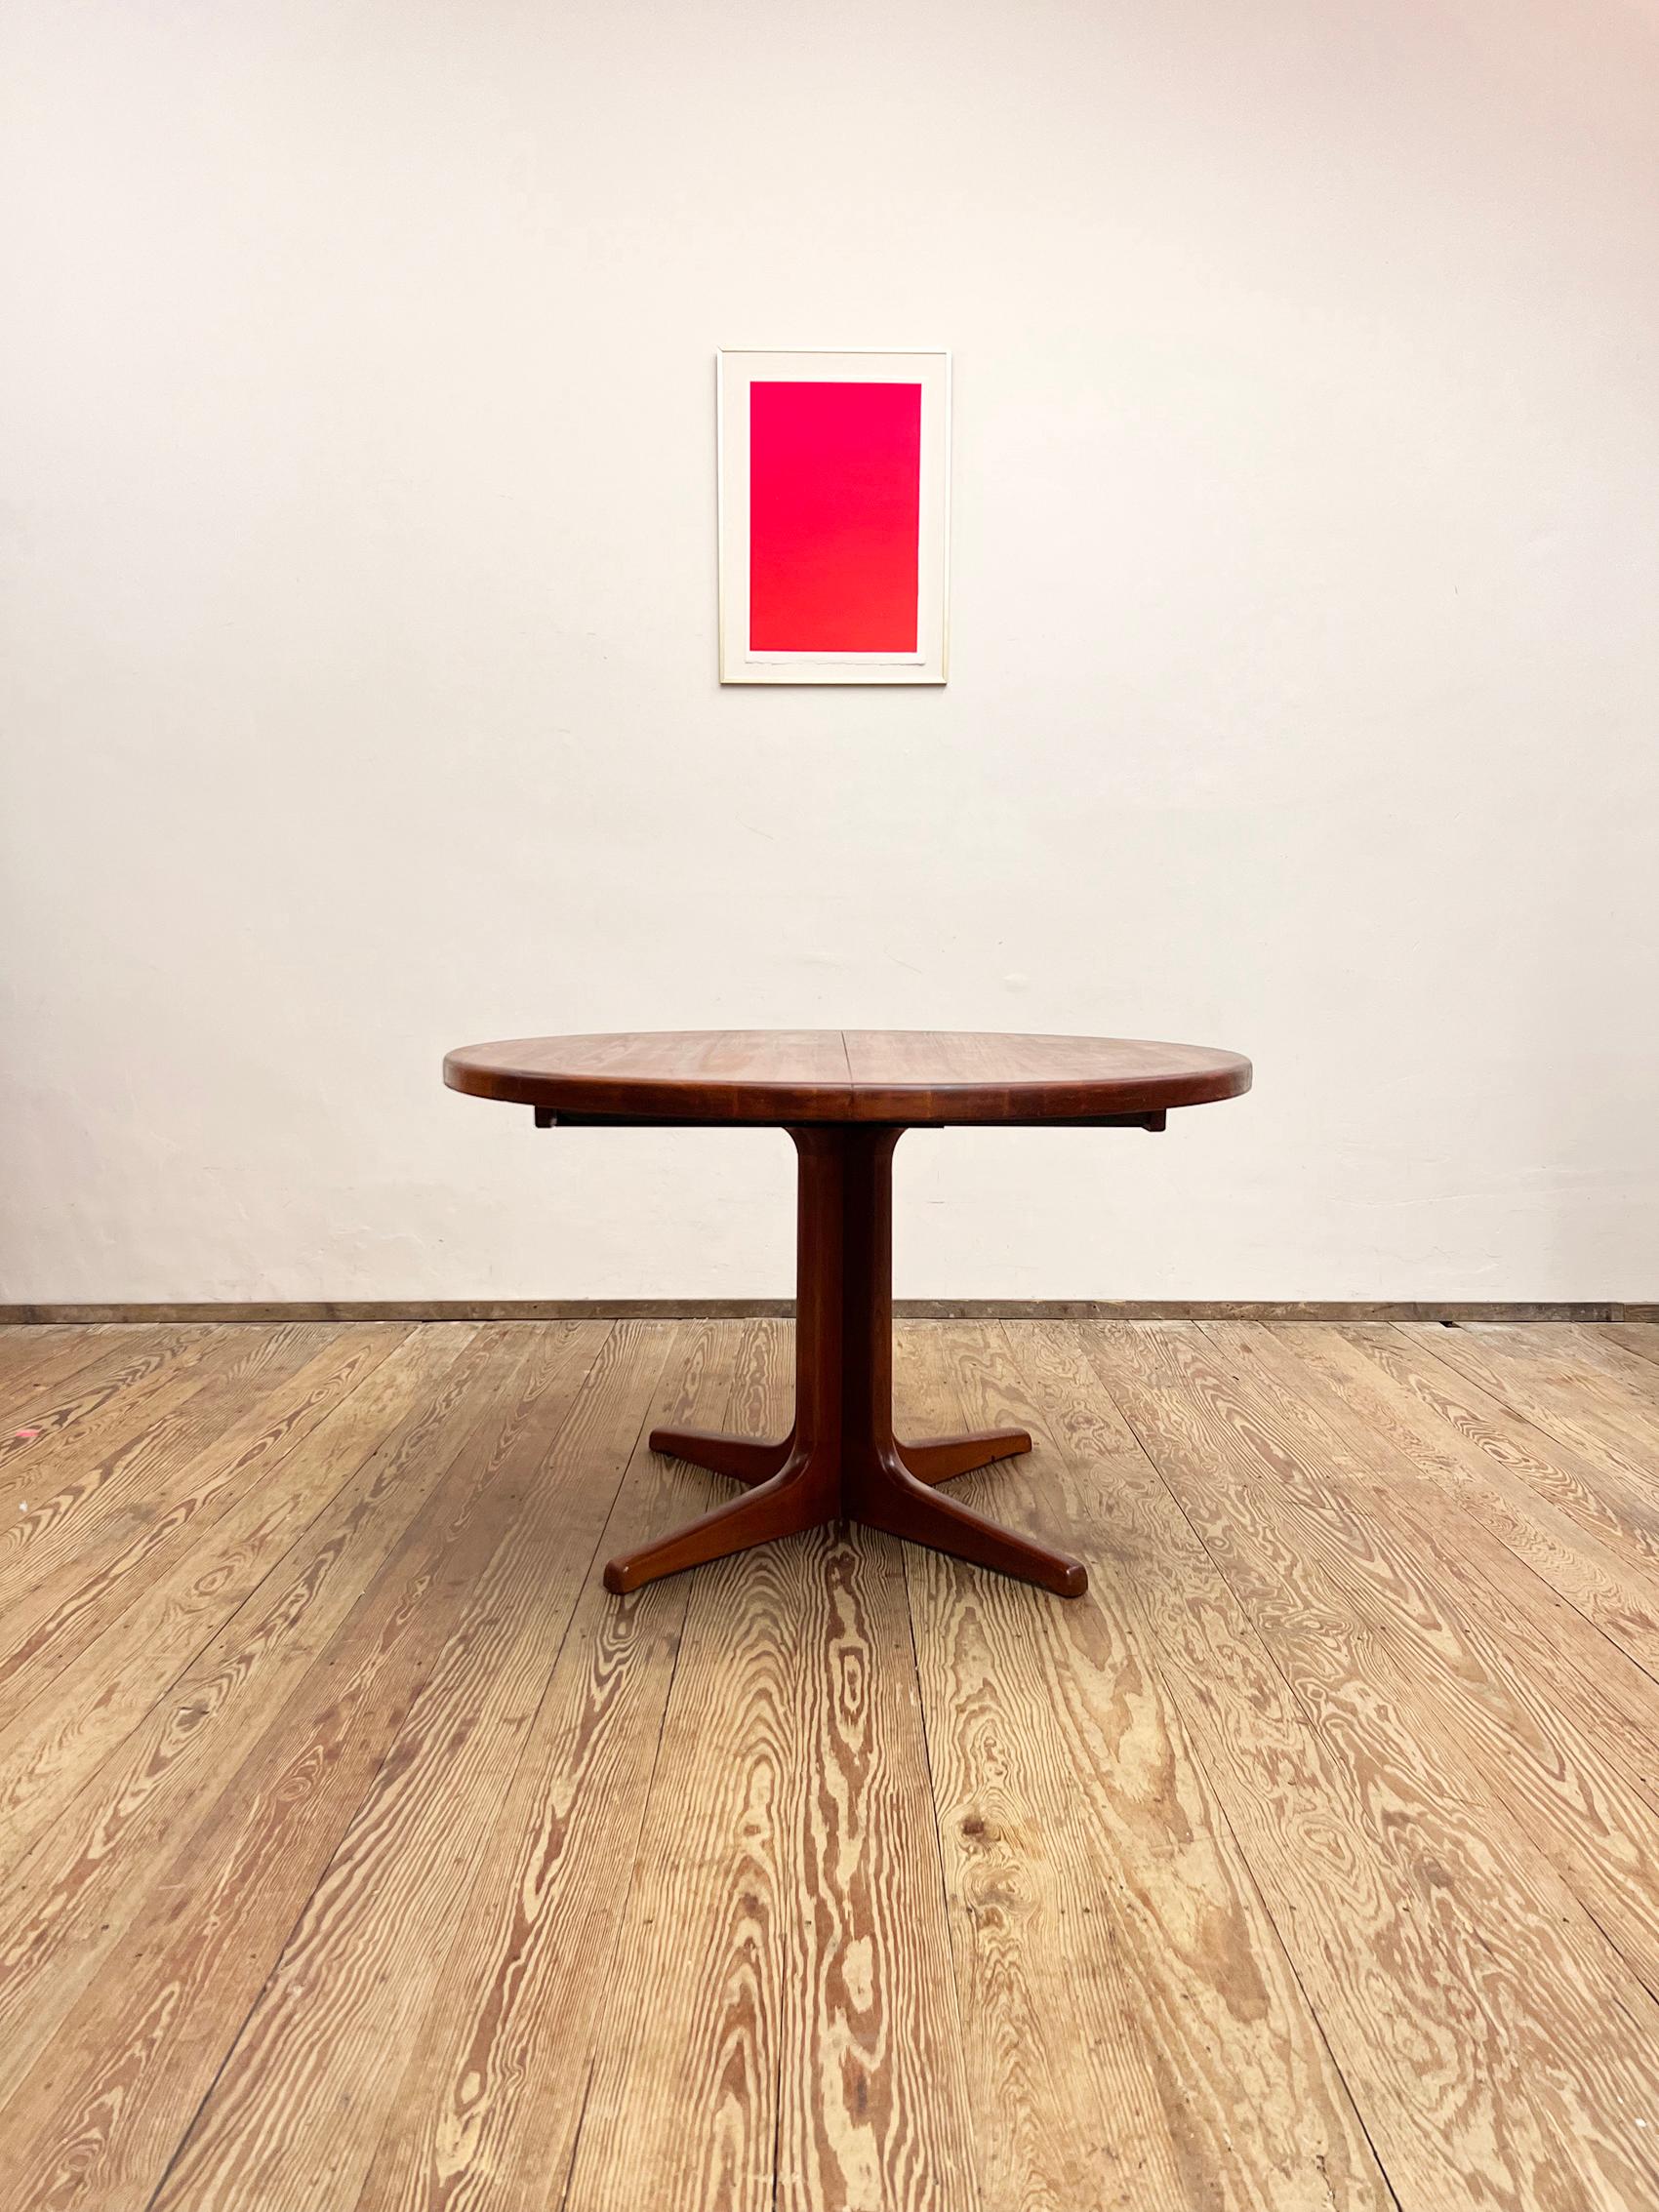 Abmessungen 120 x 74 cm (Durchmesser x Höhe)

Dänischer Esstisch, entworfen und hergestellt in Dänemark. Der Tisch ist aus massivem Teakholz gefertigt und kann erweitert werden. Der Tisch wird ohne Aufsatz geliefert.

Der Tisch ist in sehr gutem